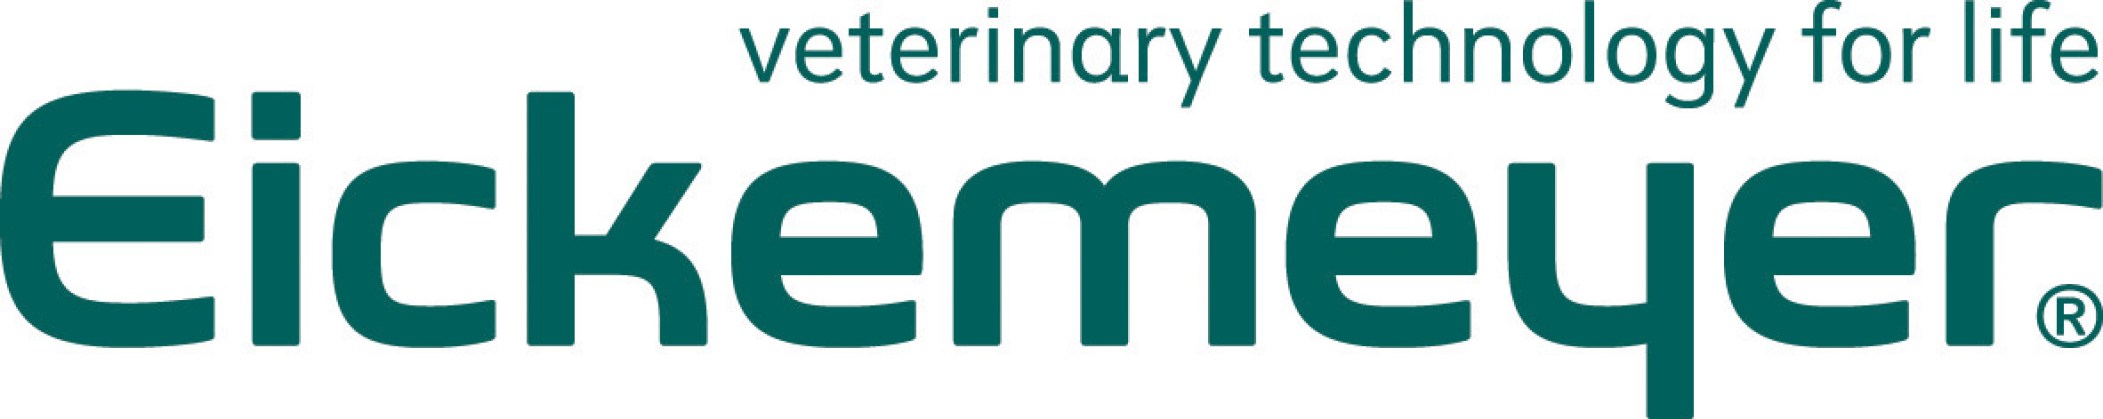 Eickemeyer-Logo8